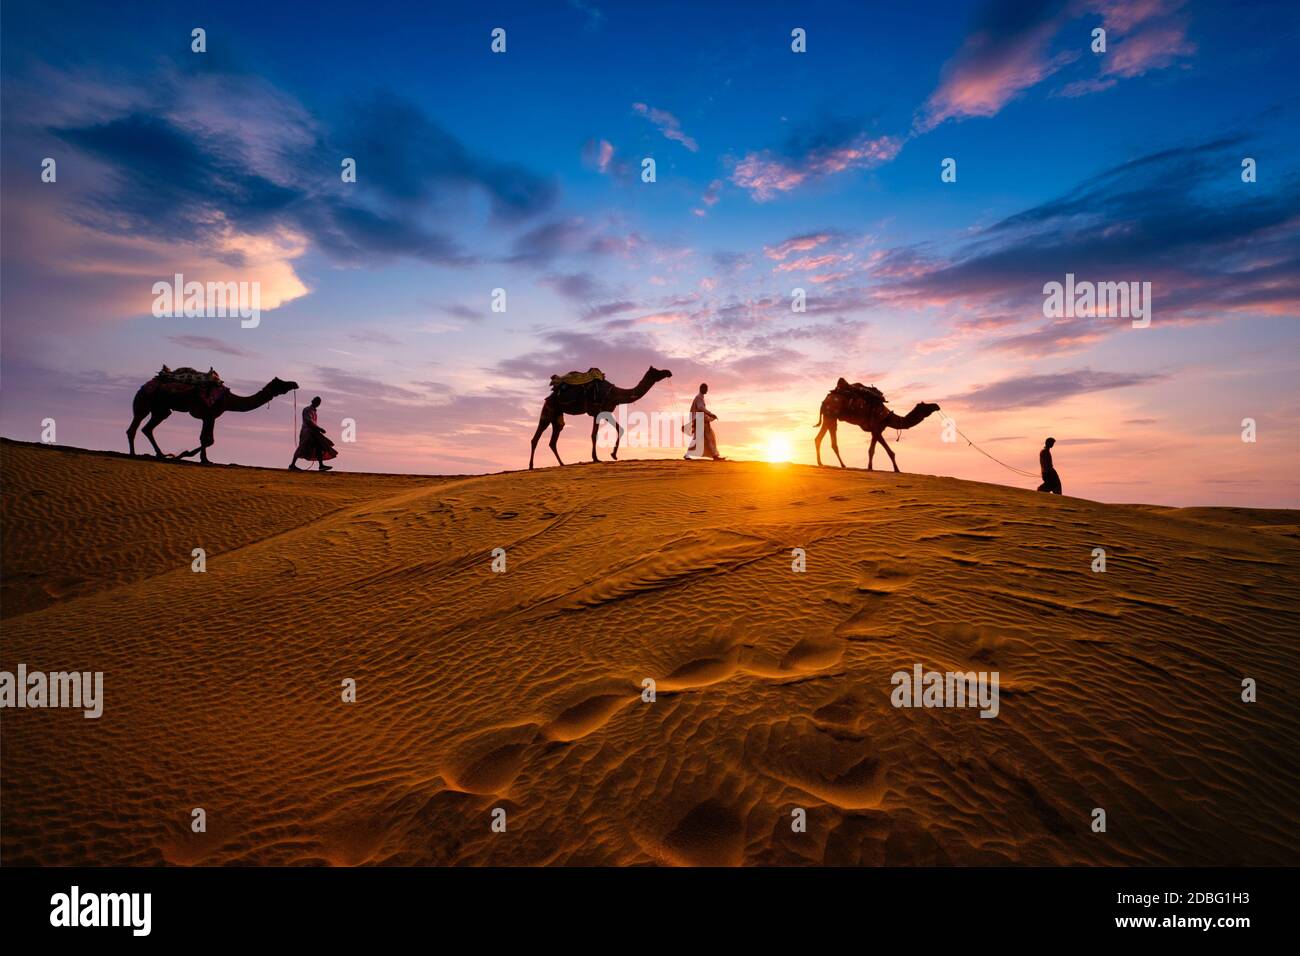 Caméléers indiens (chauffeur de chameau) bédouin avec silhouettes de chameau dans les dunes de sable du désert de Thar au coucher du soleil. Caravane dans Rajasthan Voyage tourisme fond Banque D'Images